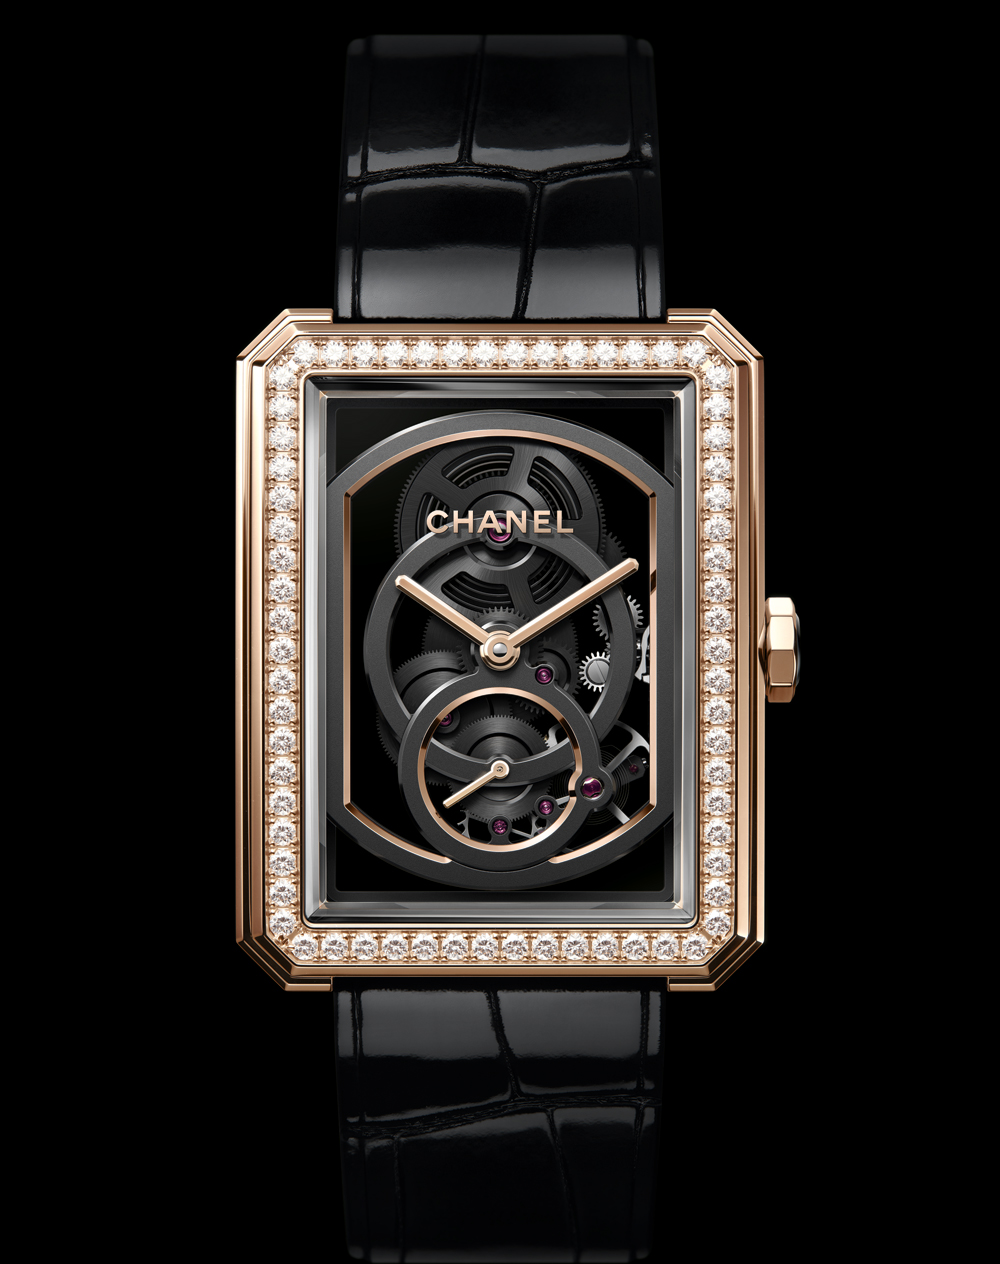 El mejor reloj femenino de 2018 es el modelo Boy-friend Skeleton de Chanel